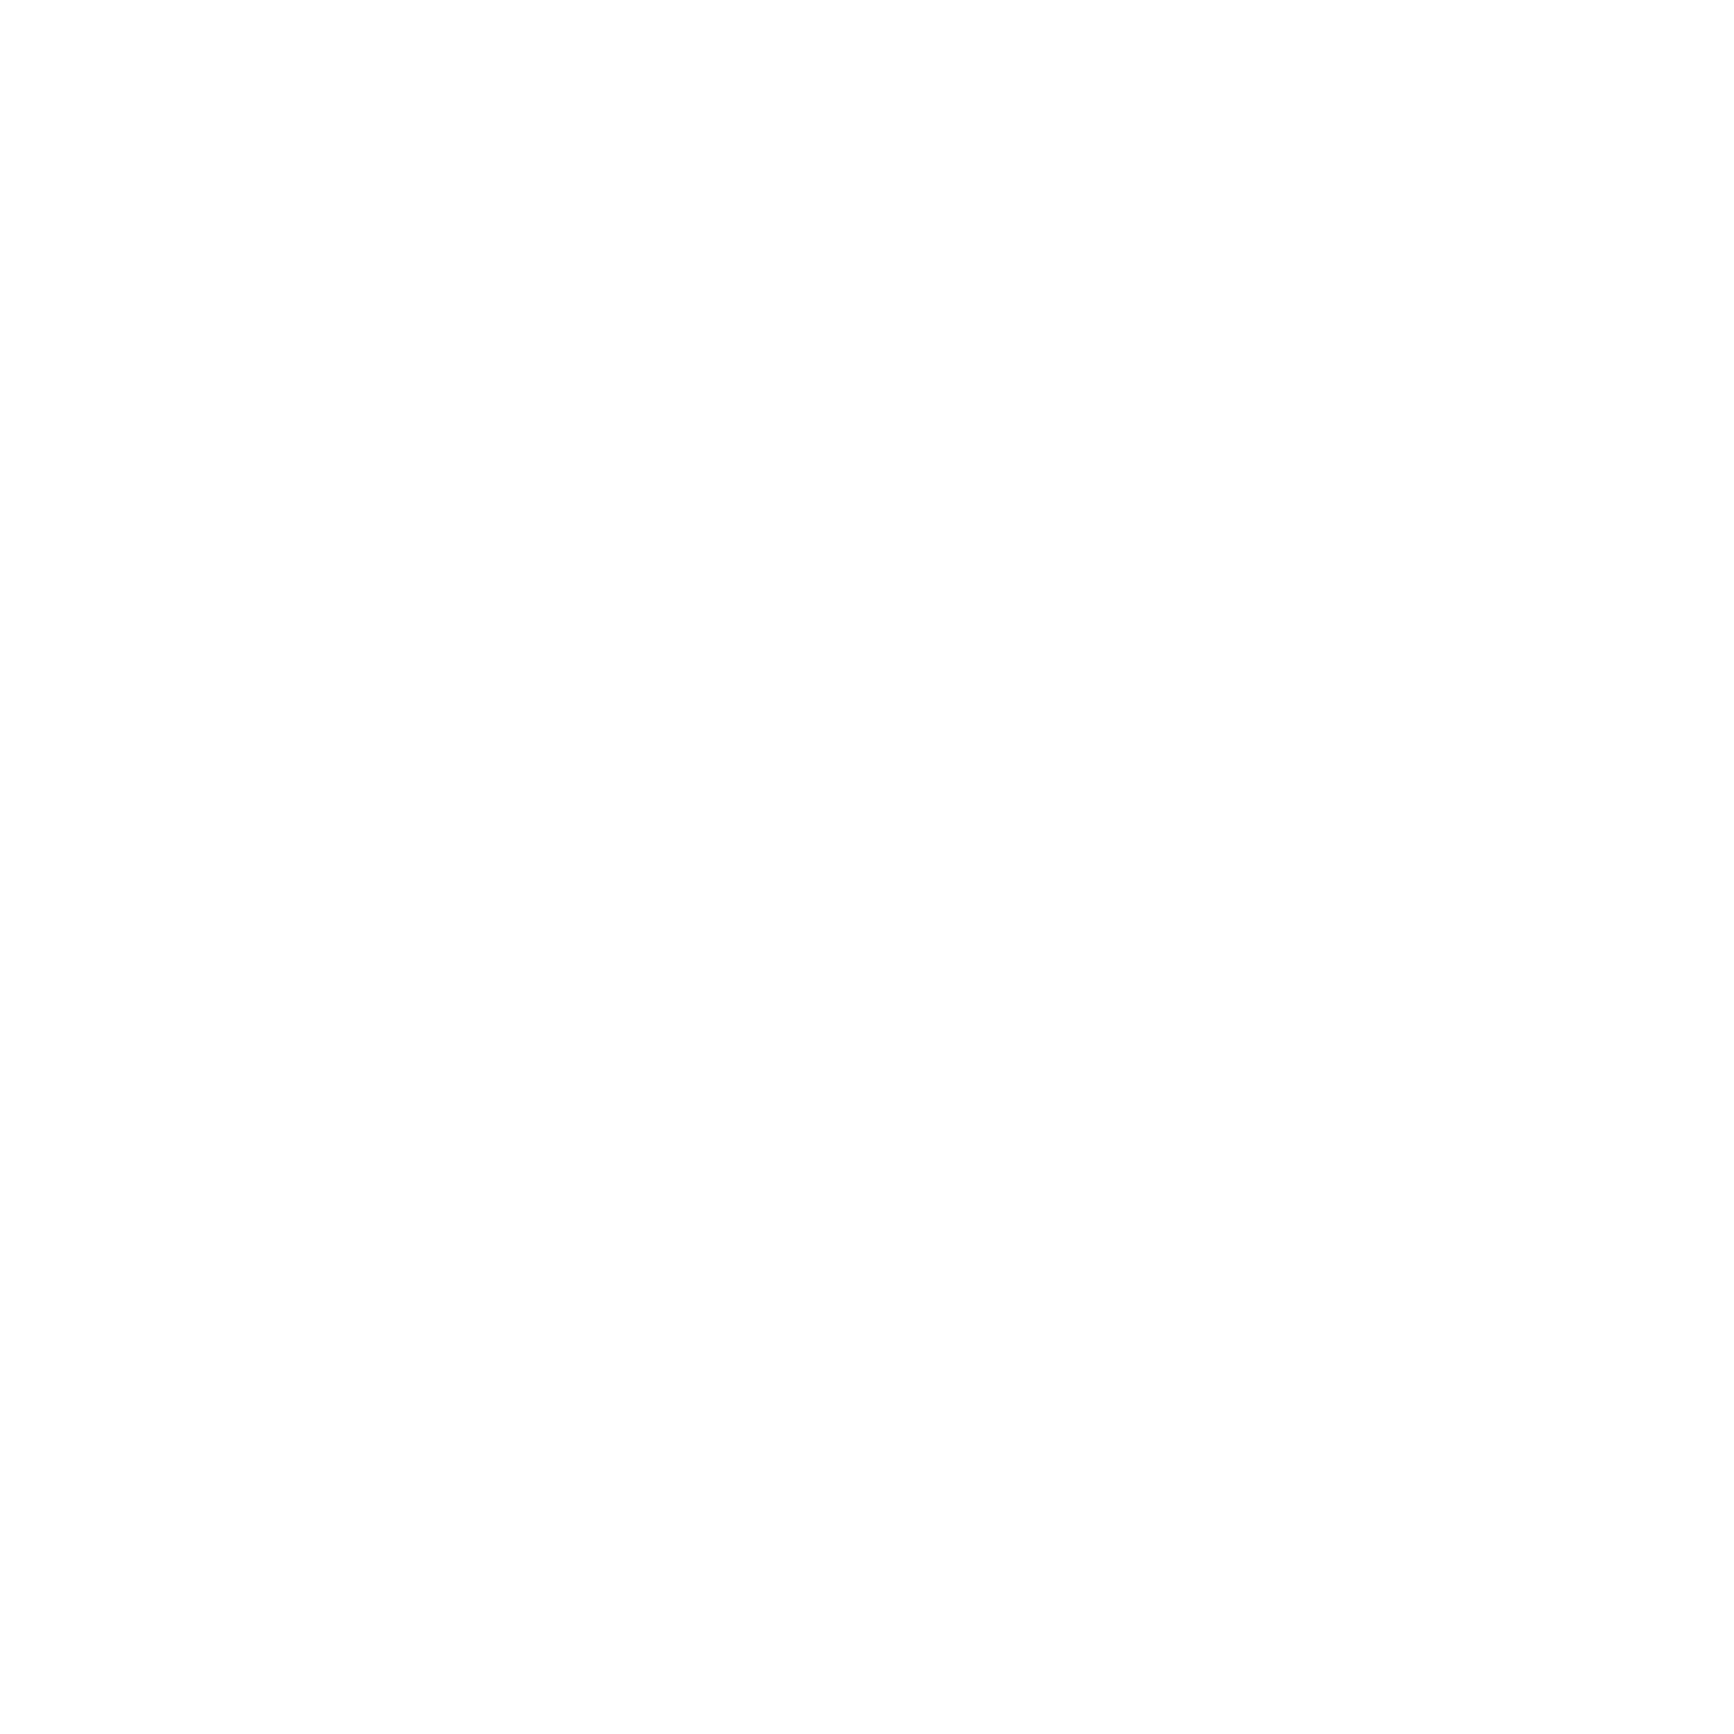 Lau & La vie en rose logo